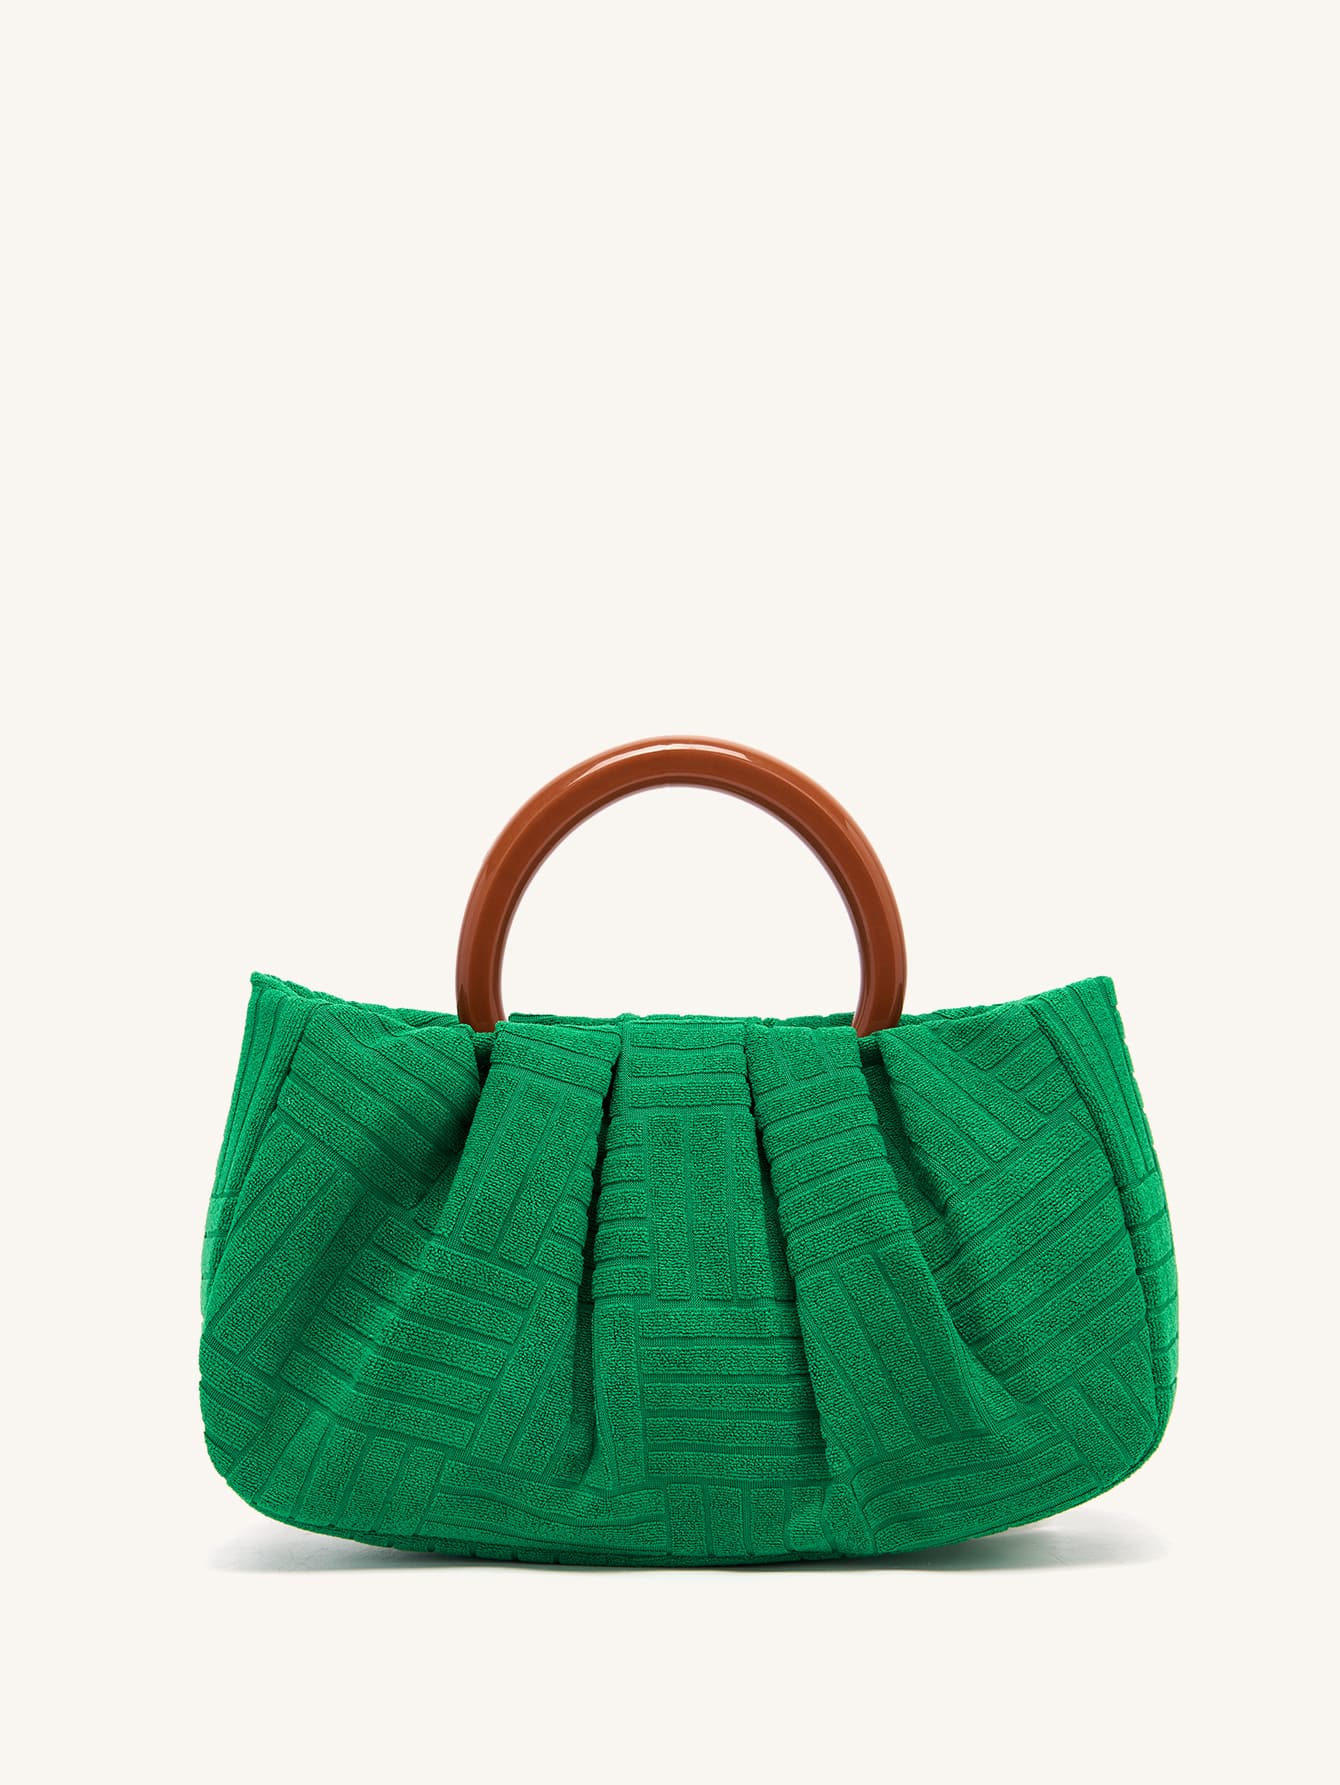 Сумка с рюшами с верхней ручкой, зеленый женская сумка клатч из пу кожи с рюшами